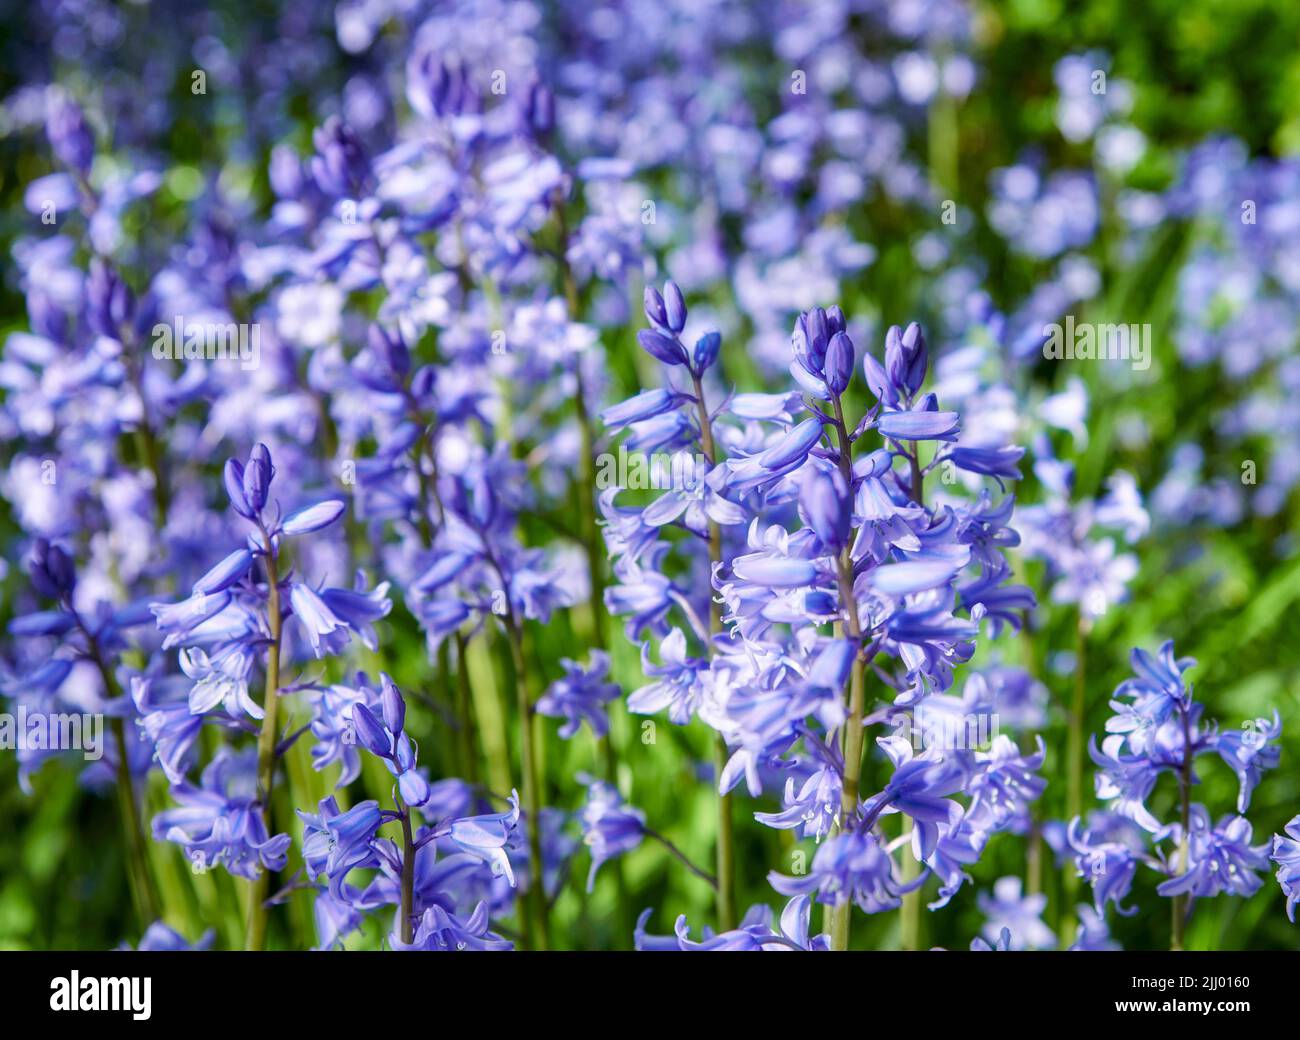 An einem Frühlingstag blüht ein Feld von Bluebell-Blumen im Freien in einem Park. Wunderschöne, lebendige, violette Pflanzen, die in einem grünen Busch draußen in einem Park wachsen Stockfoto